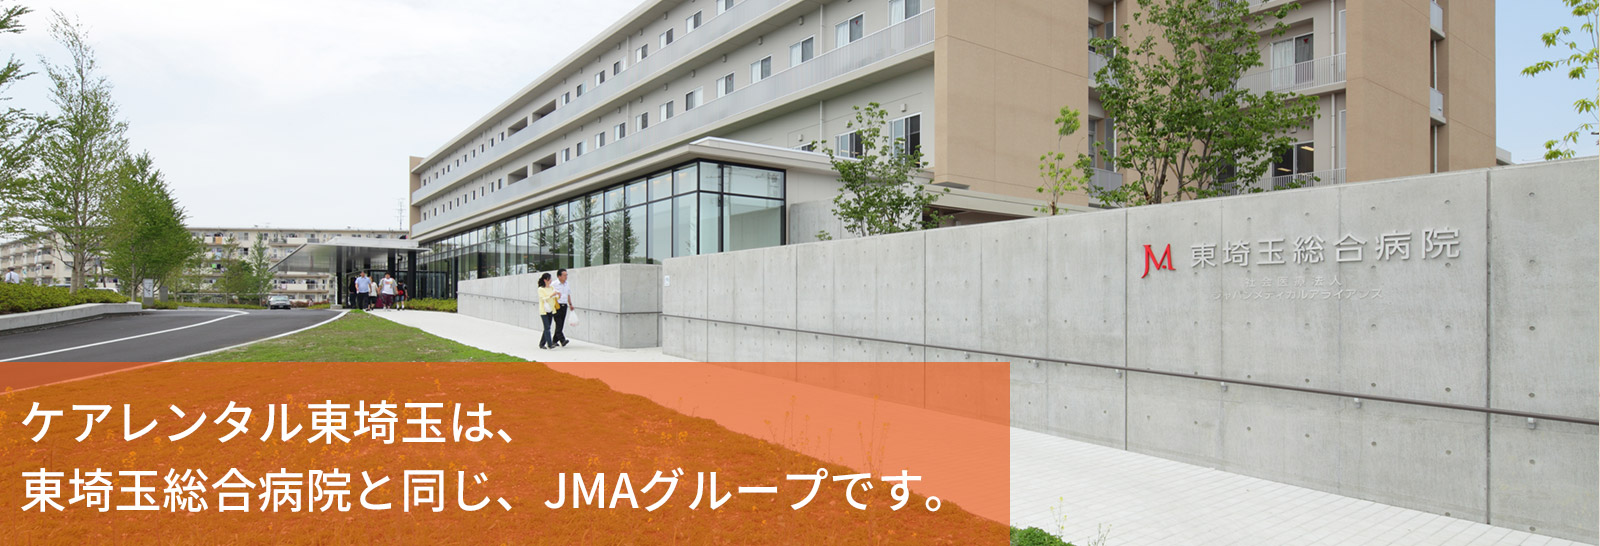 ケアレンタル東埼玉は、東埼玉総合病院と同じ、JMAグループです